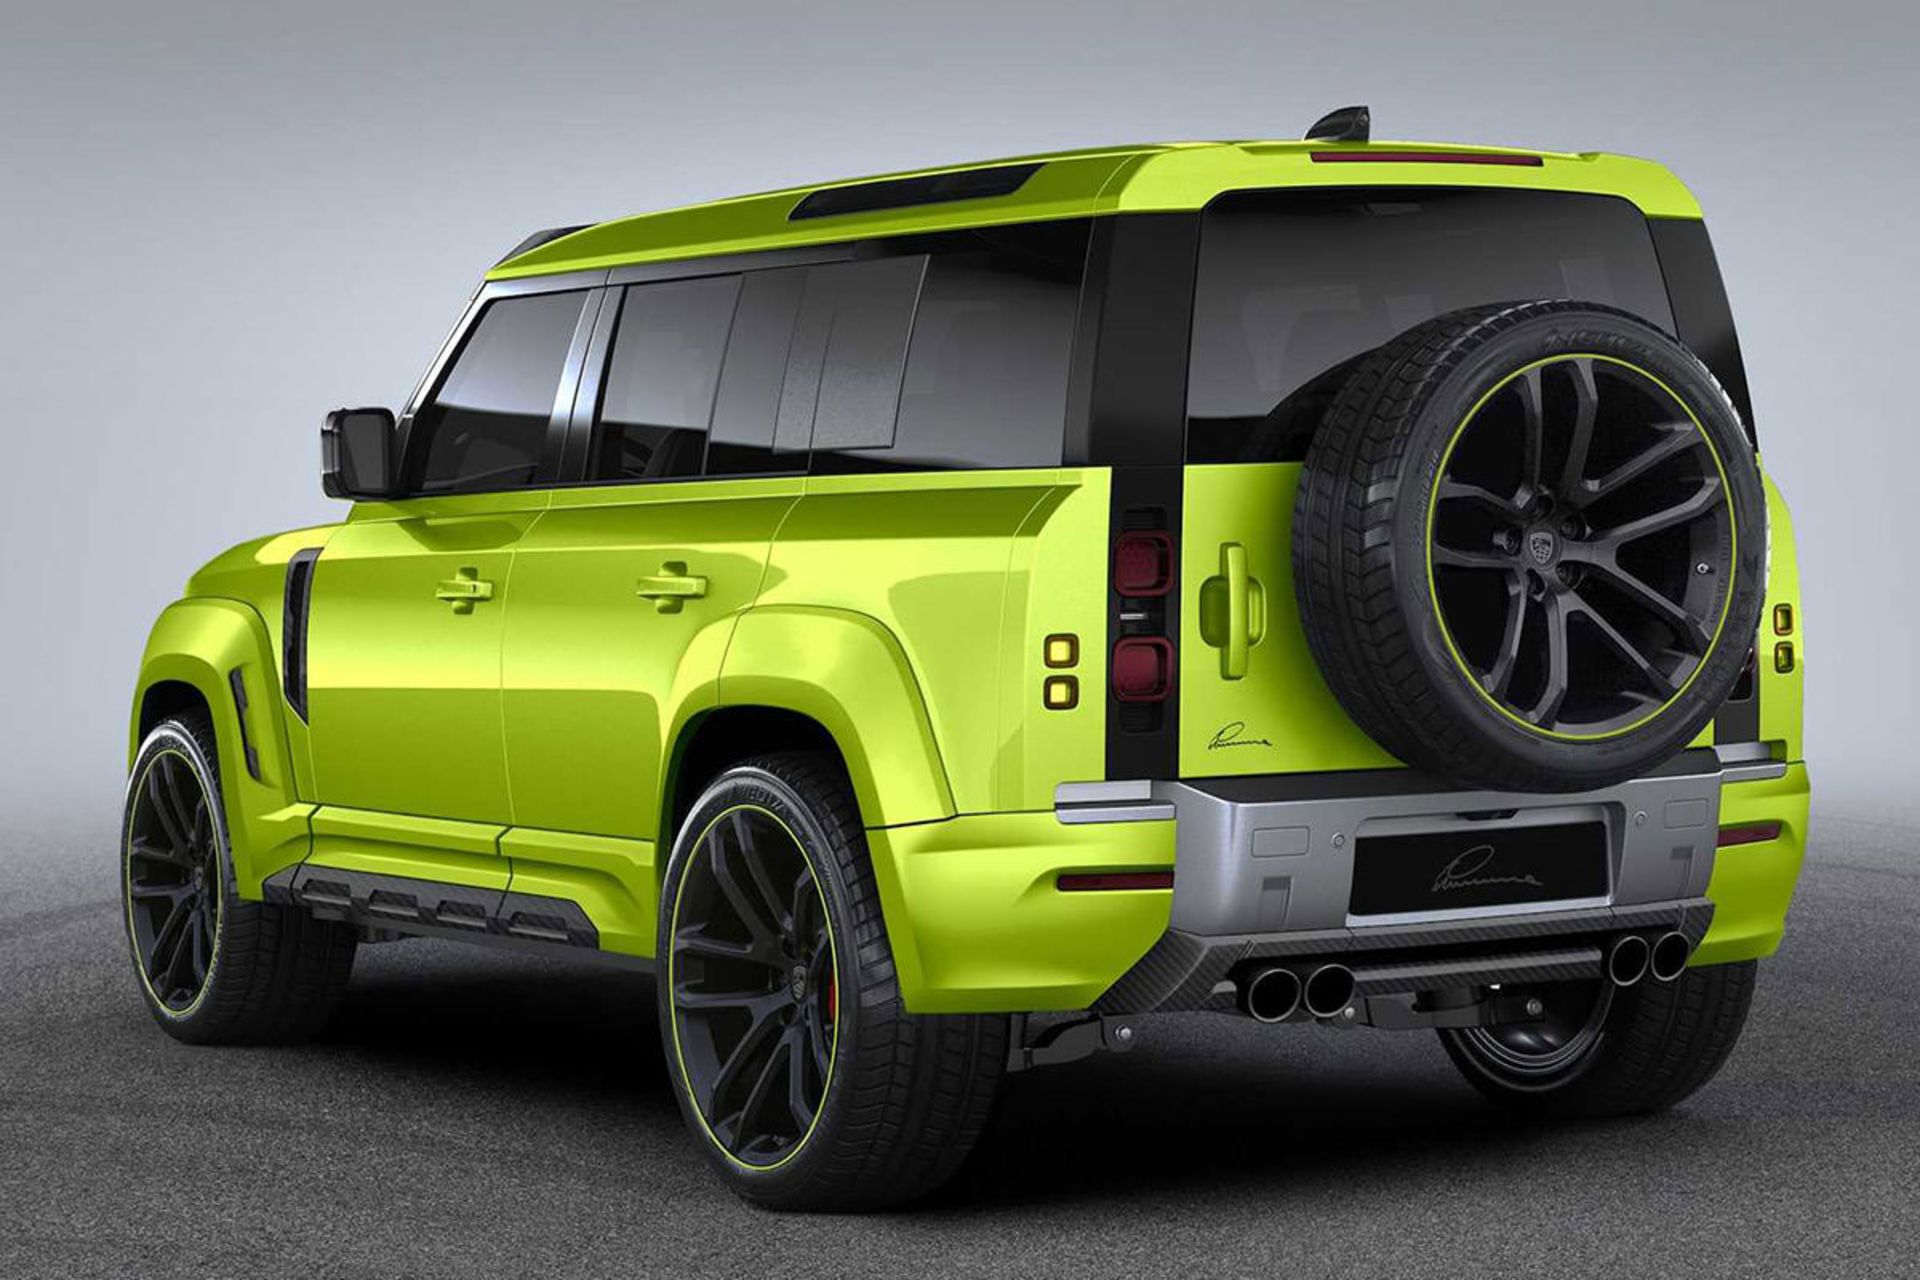 مرجع متخصصين ايران نماي عقب شاسي بلند لندرور ديفندر / Land Rover Defender با تيونينگ لوما ديزاين و رنگ سبز فسفري